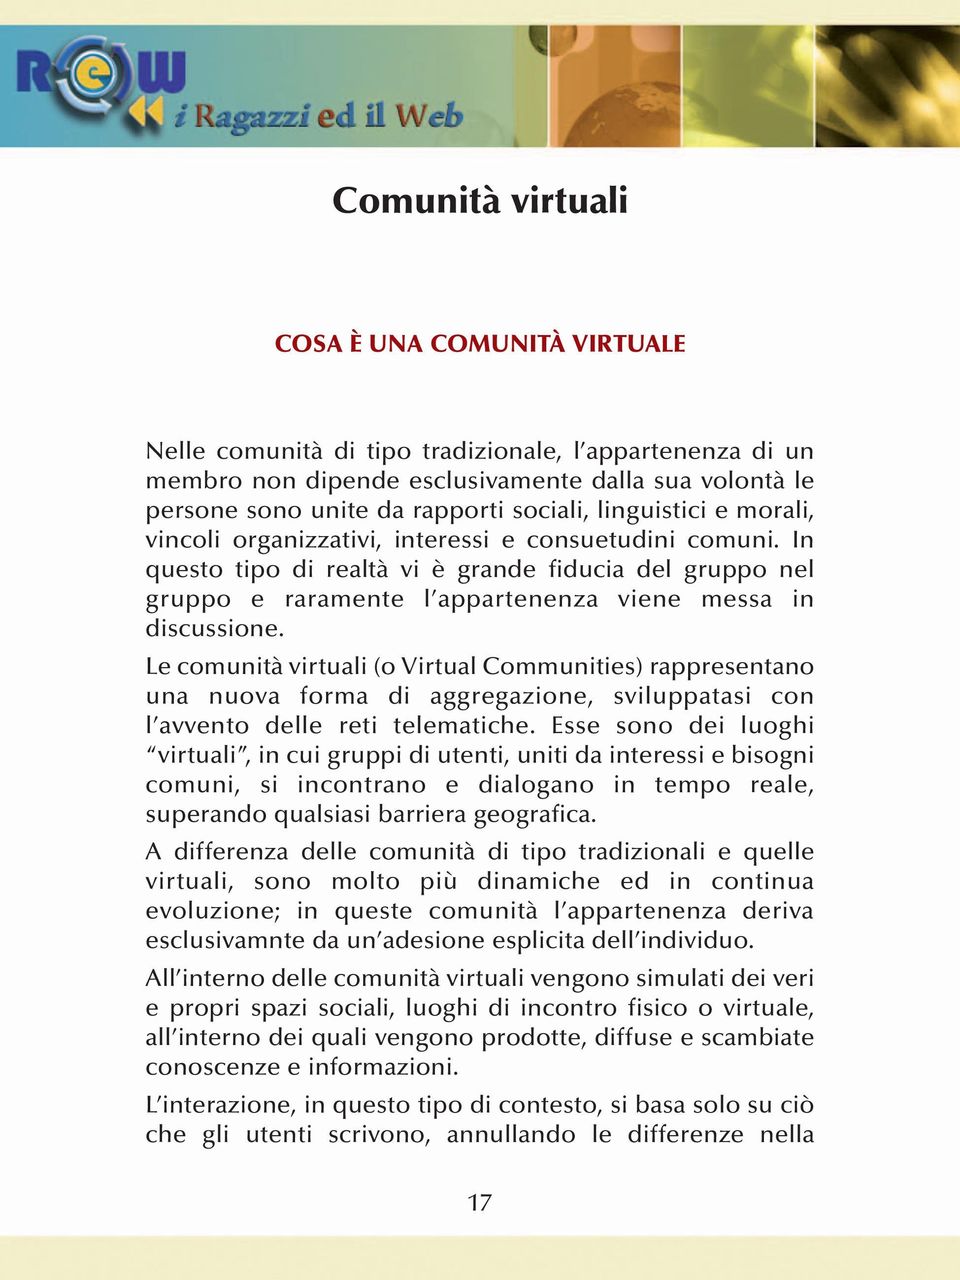 Le comunità virtuali (o Virtual Communities) rappresentano una nuova forma di aggregazione, sviluppatasi con l avvento delle reti telematiche.